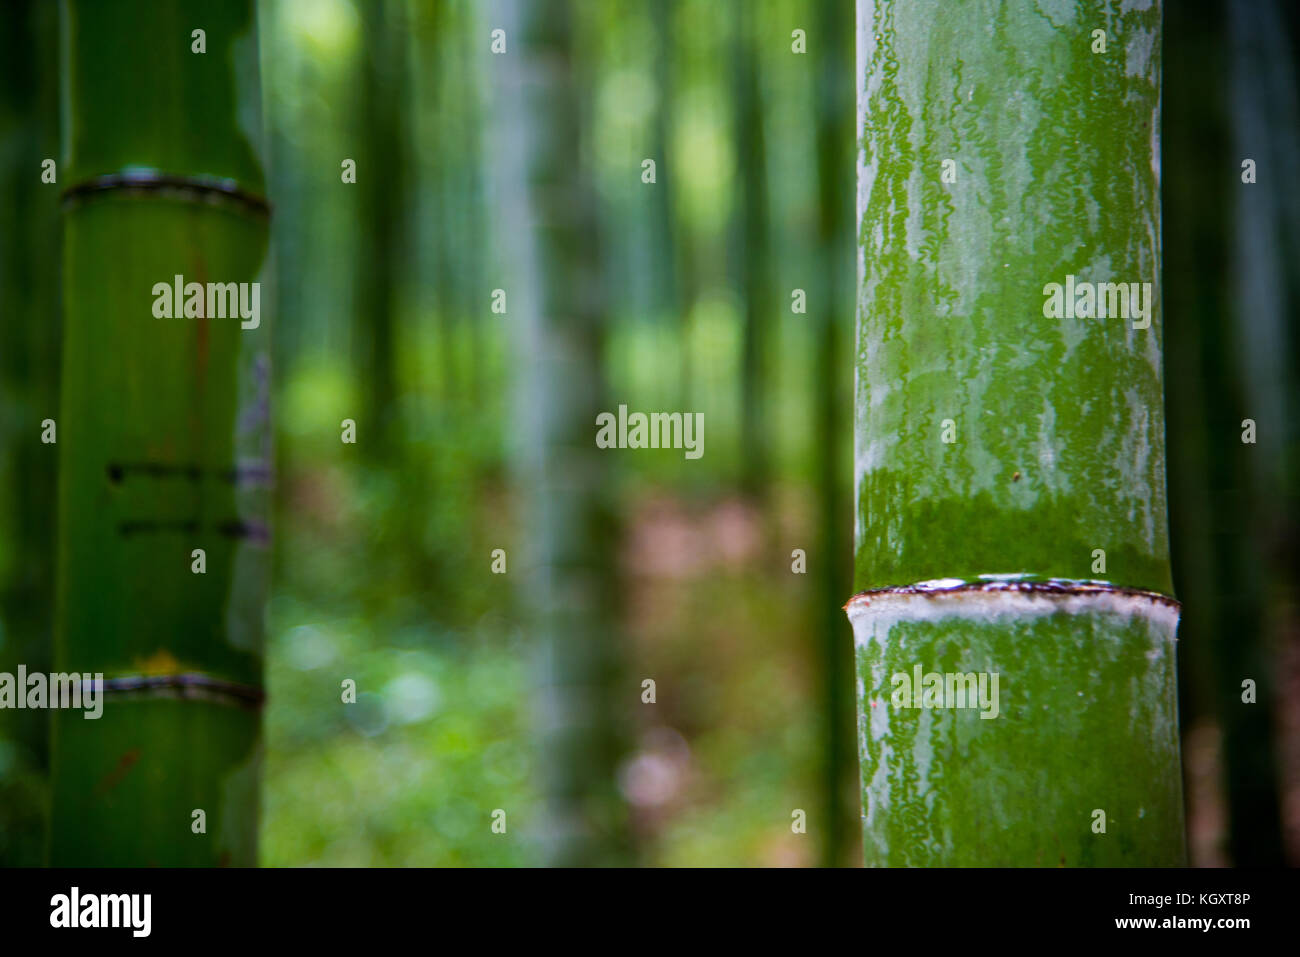 Foresta di bamboo anji nella provincia dello Zhejiang cina Foto Stock